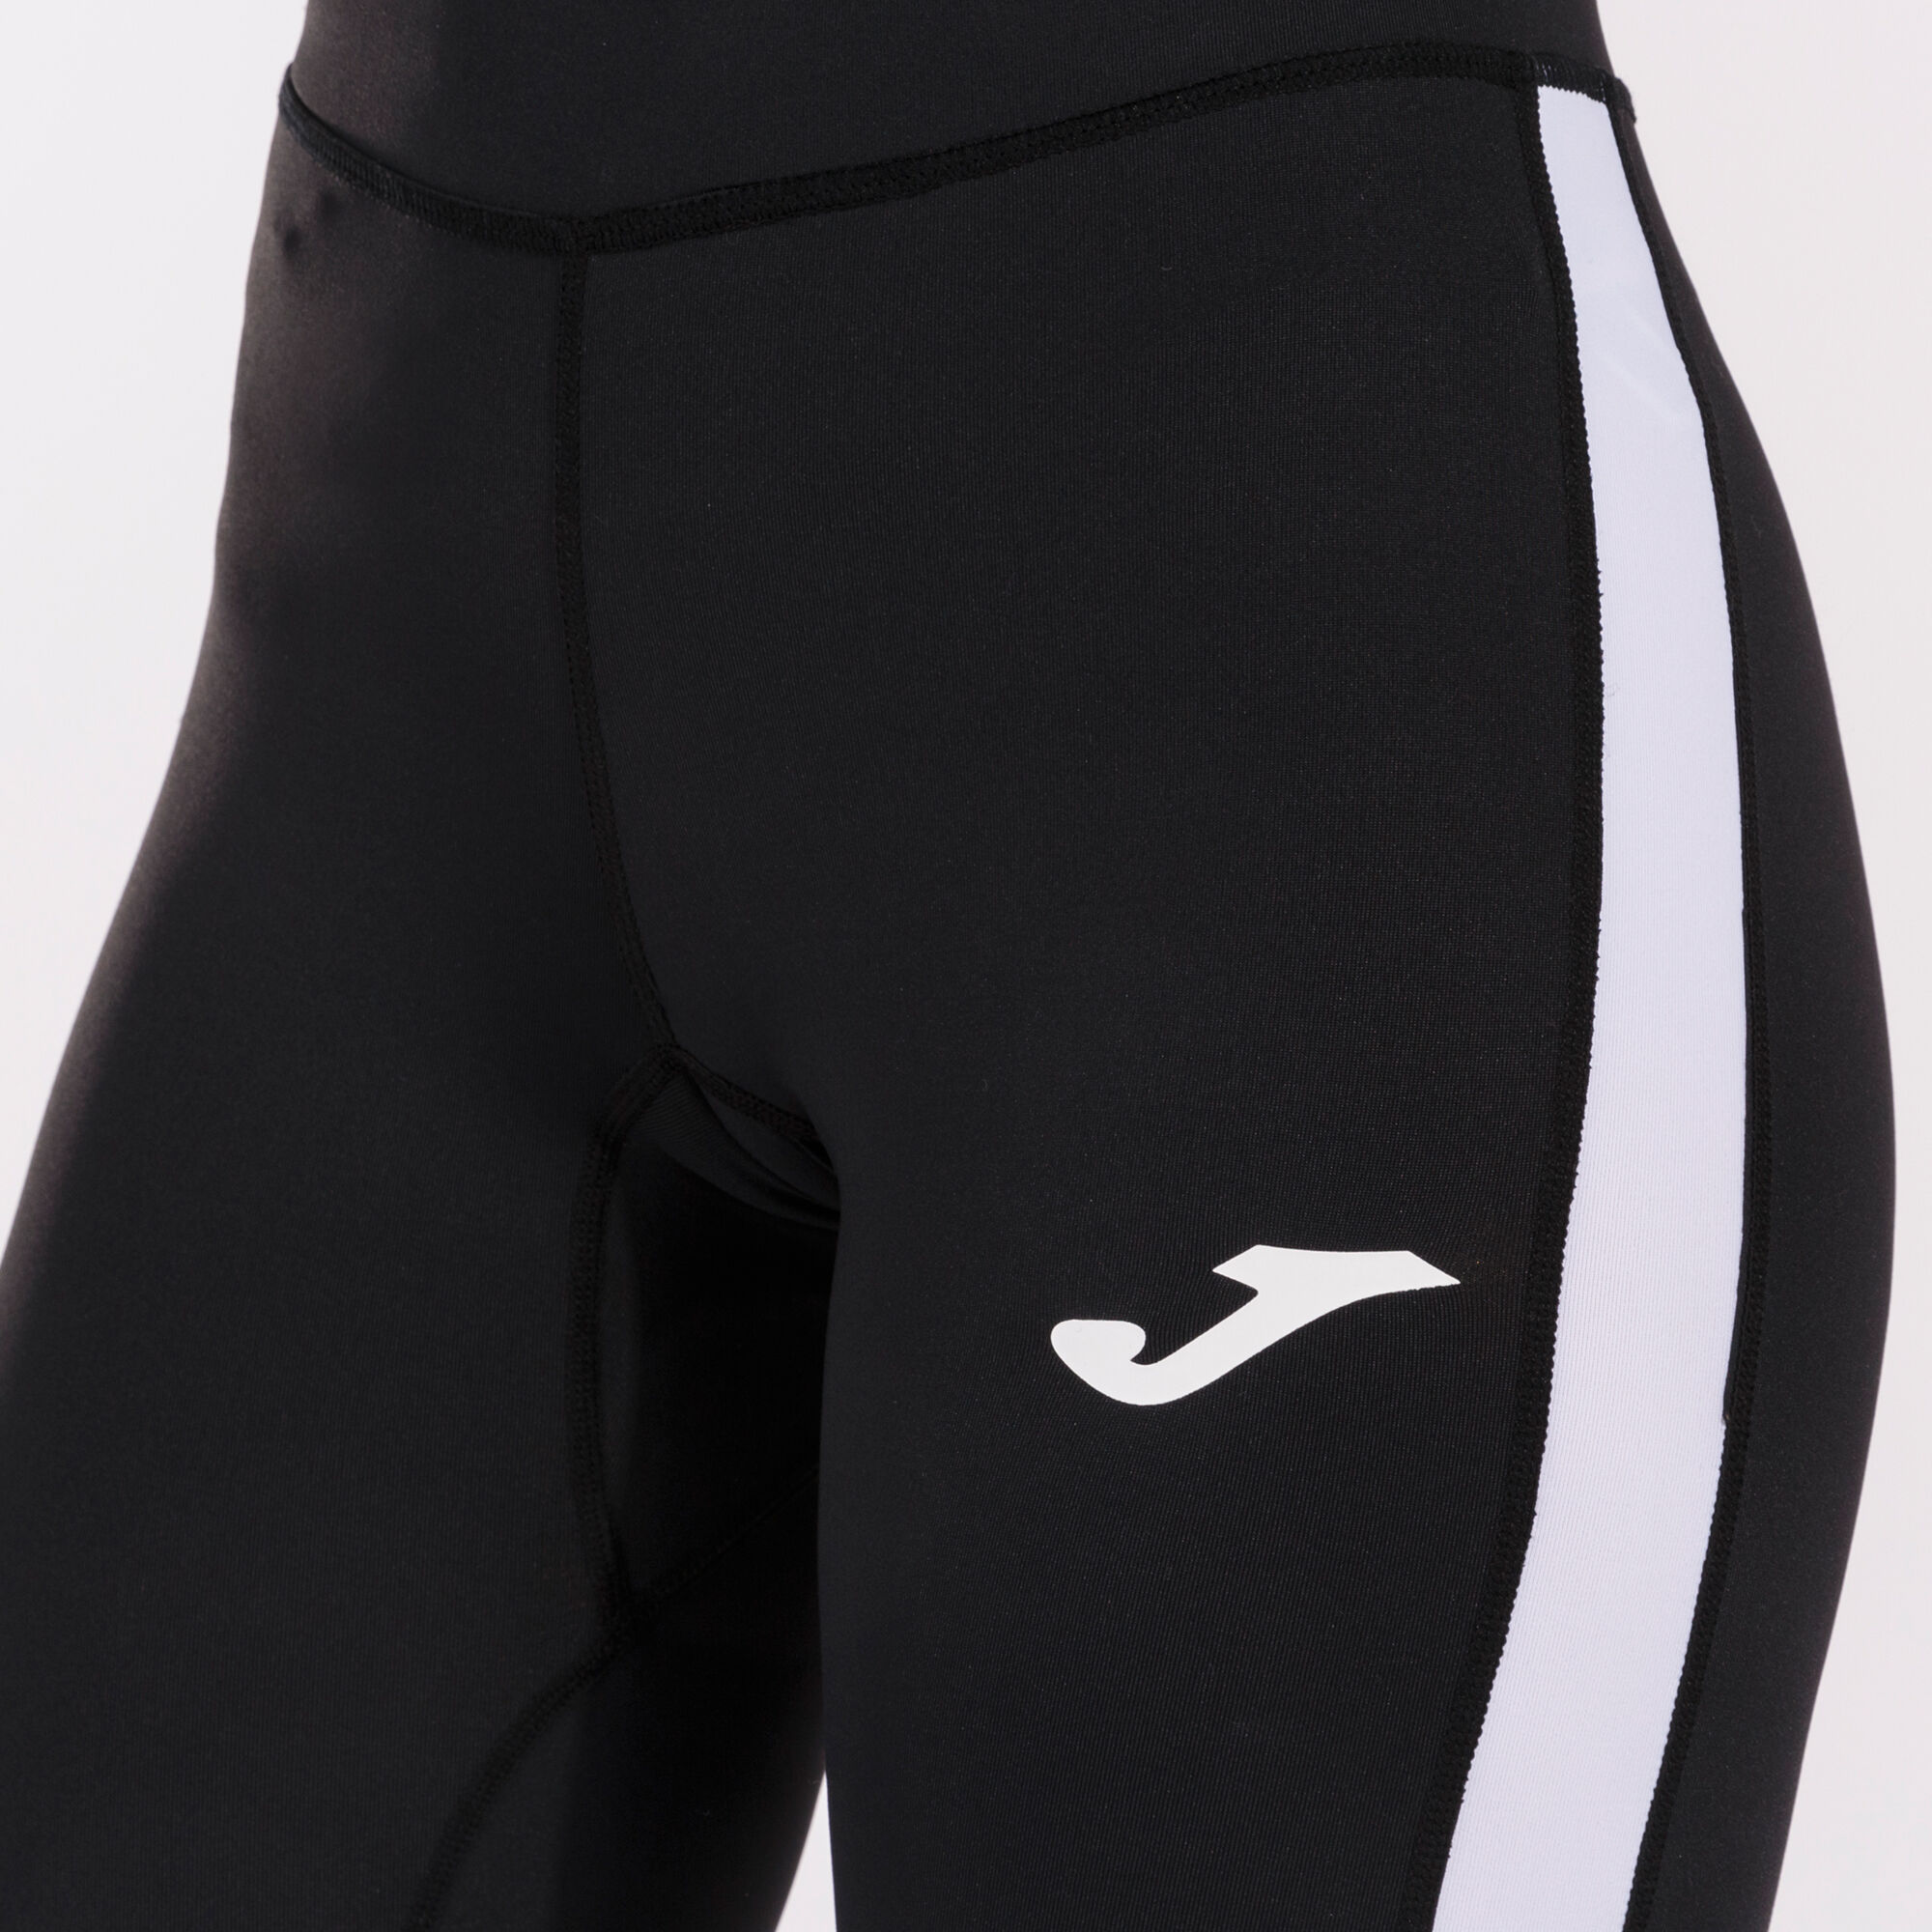 Mallas deportivas para hombre con bolsillos, cintura elástica, cordón,  mallas cónicas para correr MABOTO Negro/S